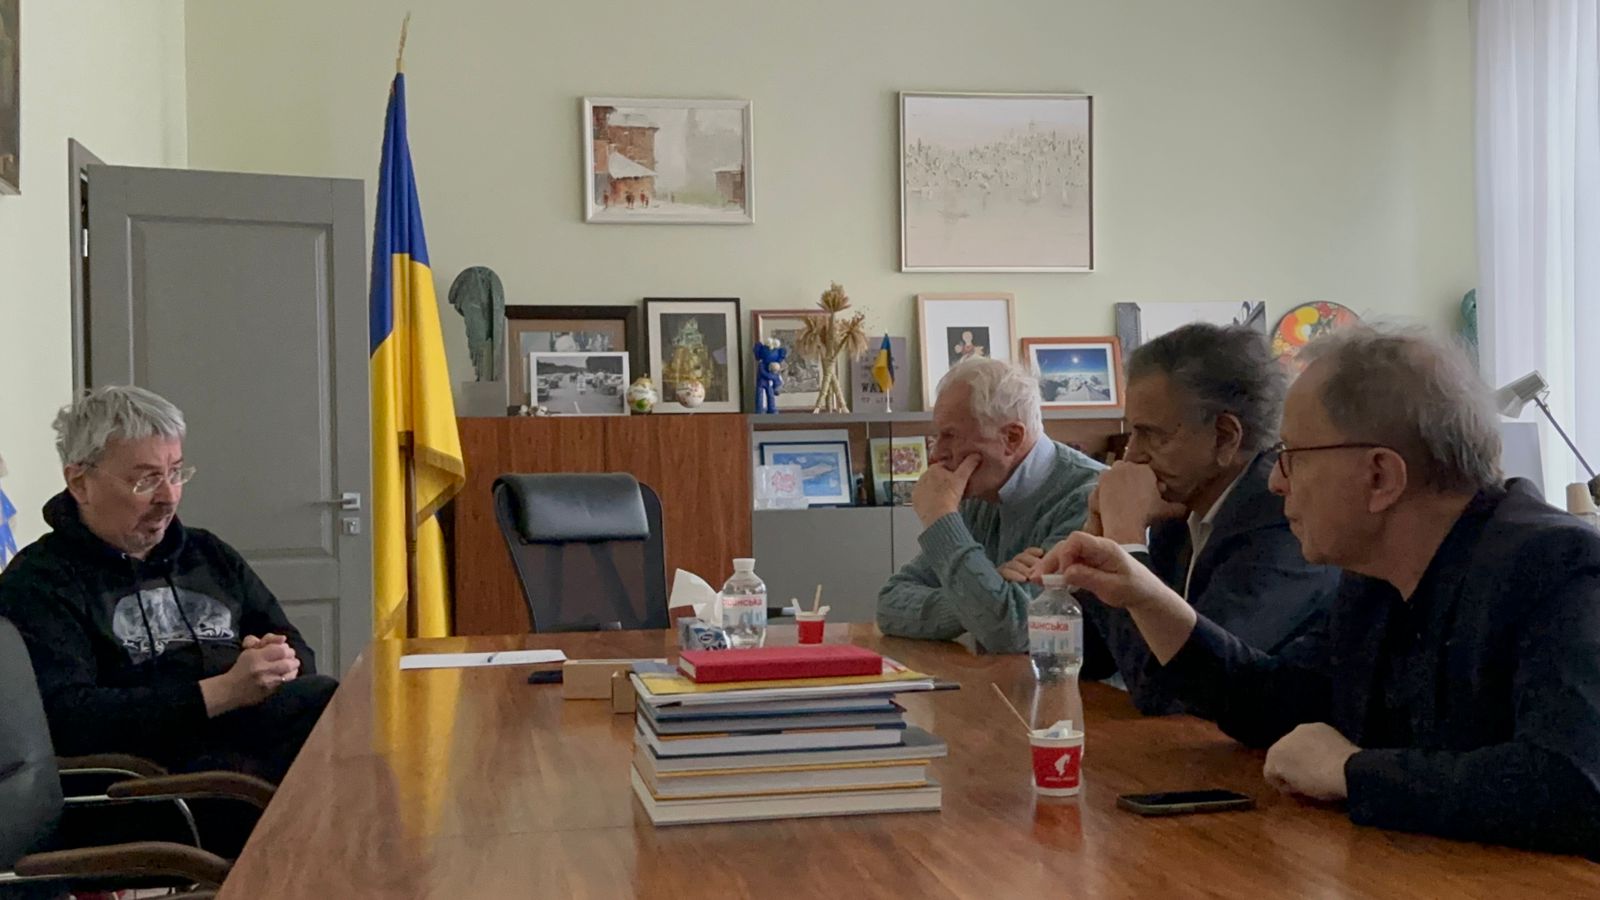 BHL, Gilles Hertzog et François Margolin dialoguent au Ministère de la Culture ukranien avec le ministre Oleksandr Tkachenko.